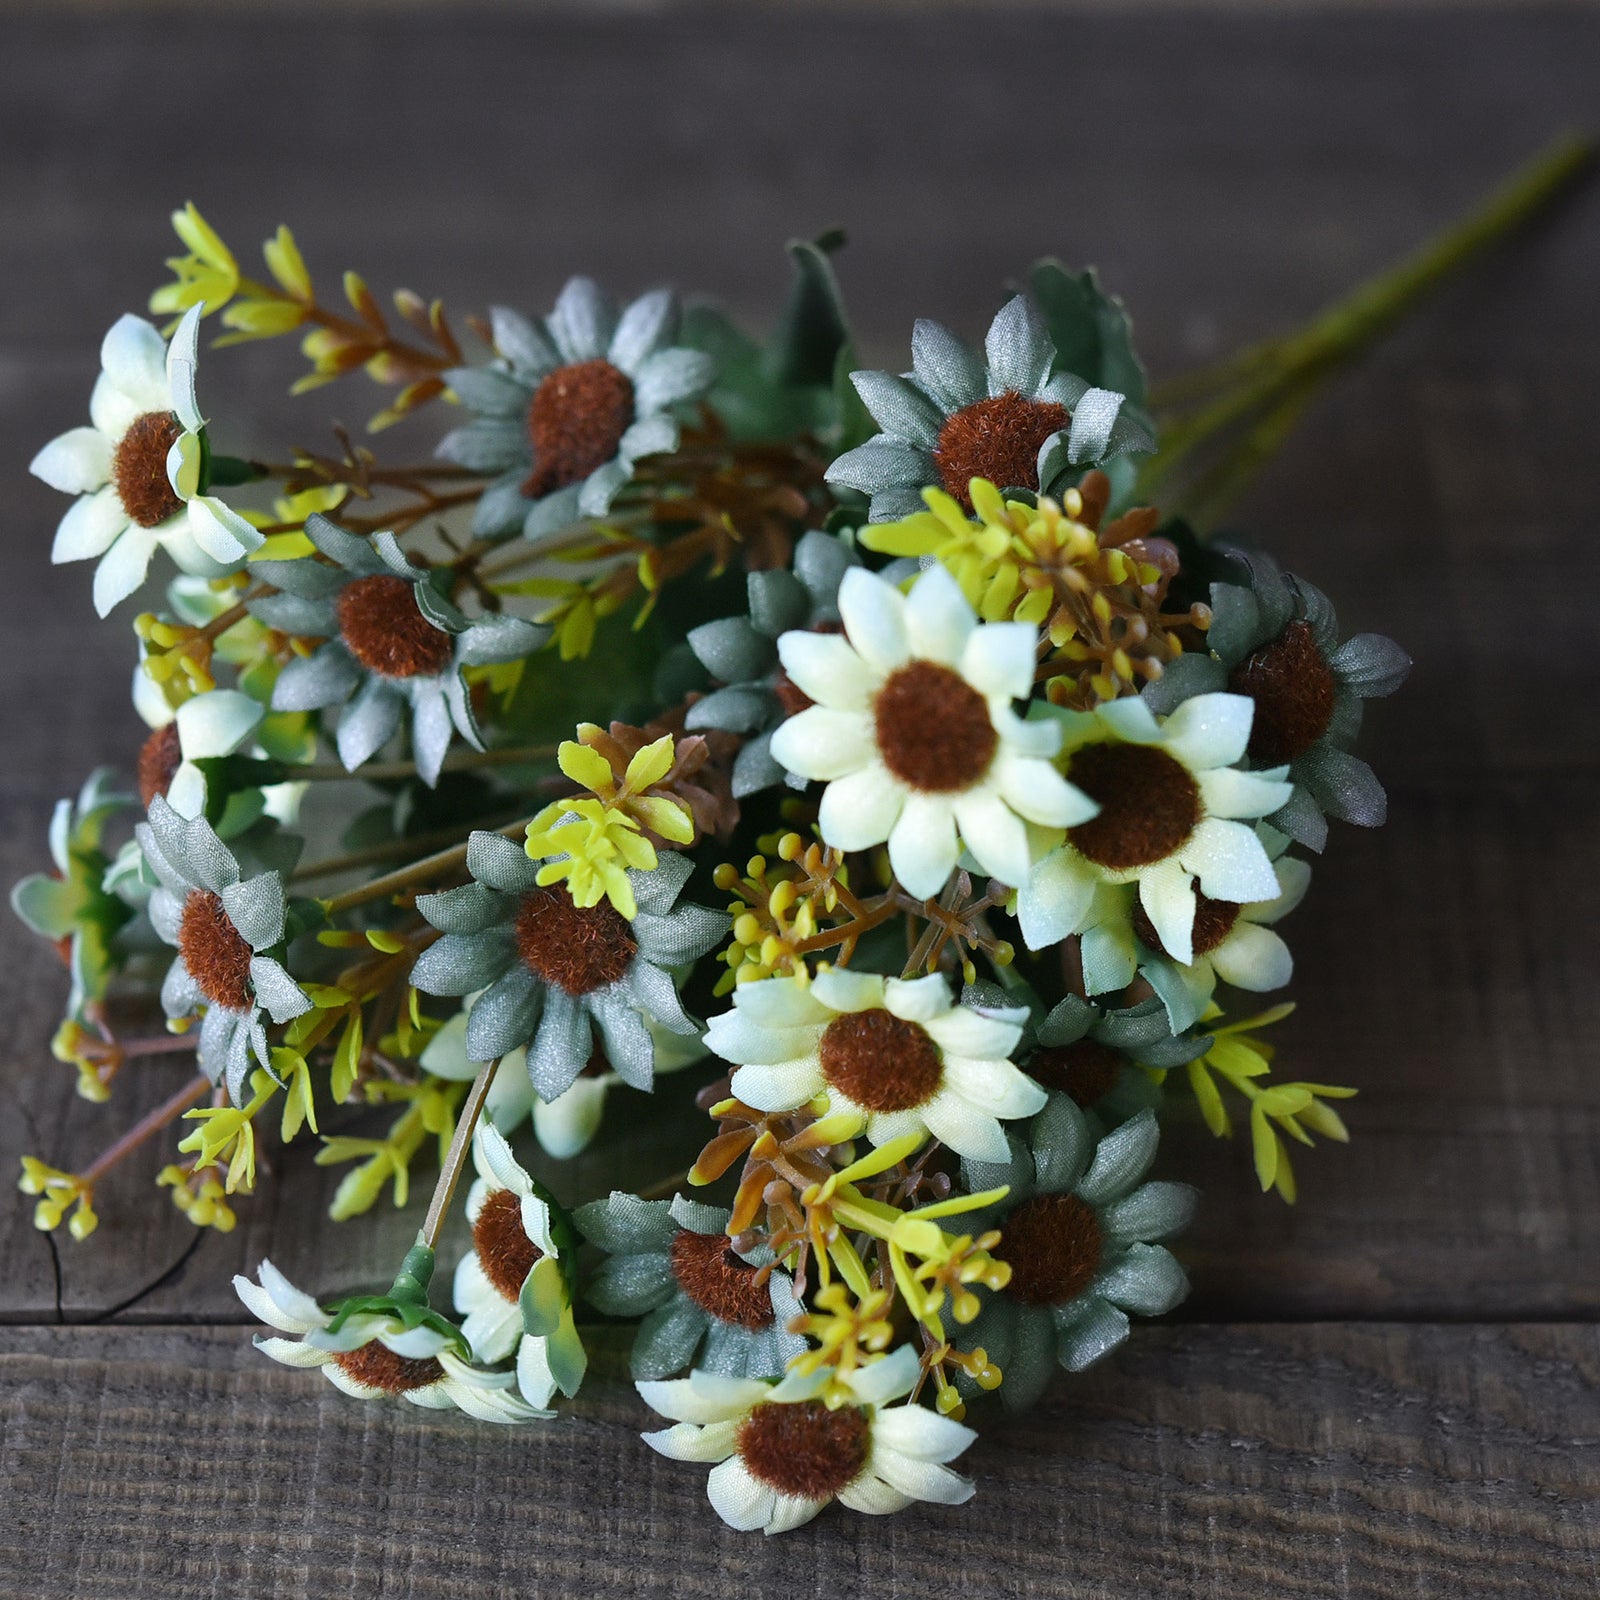 FiveSeasonStuff Daisy Silk Flowers, Outdoor Artificial Flowers Arrangement Decorations (4 Bundles,) 13 inches Tall (Yellow & Blue Rustic)